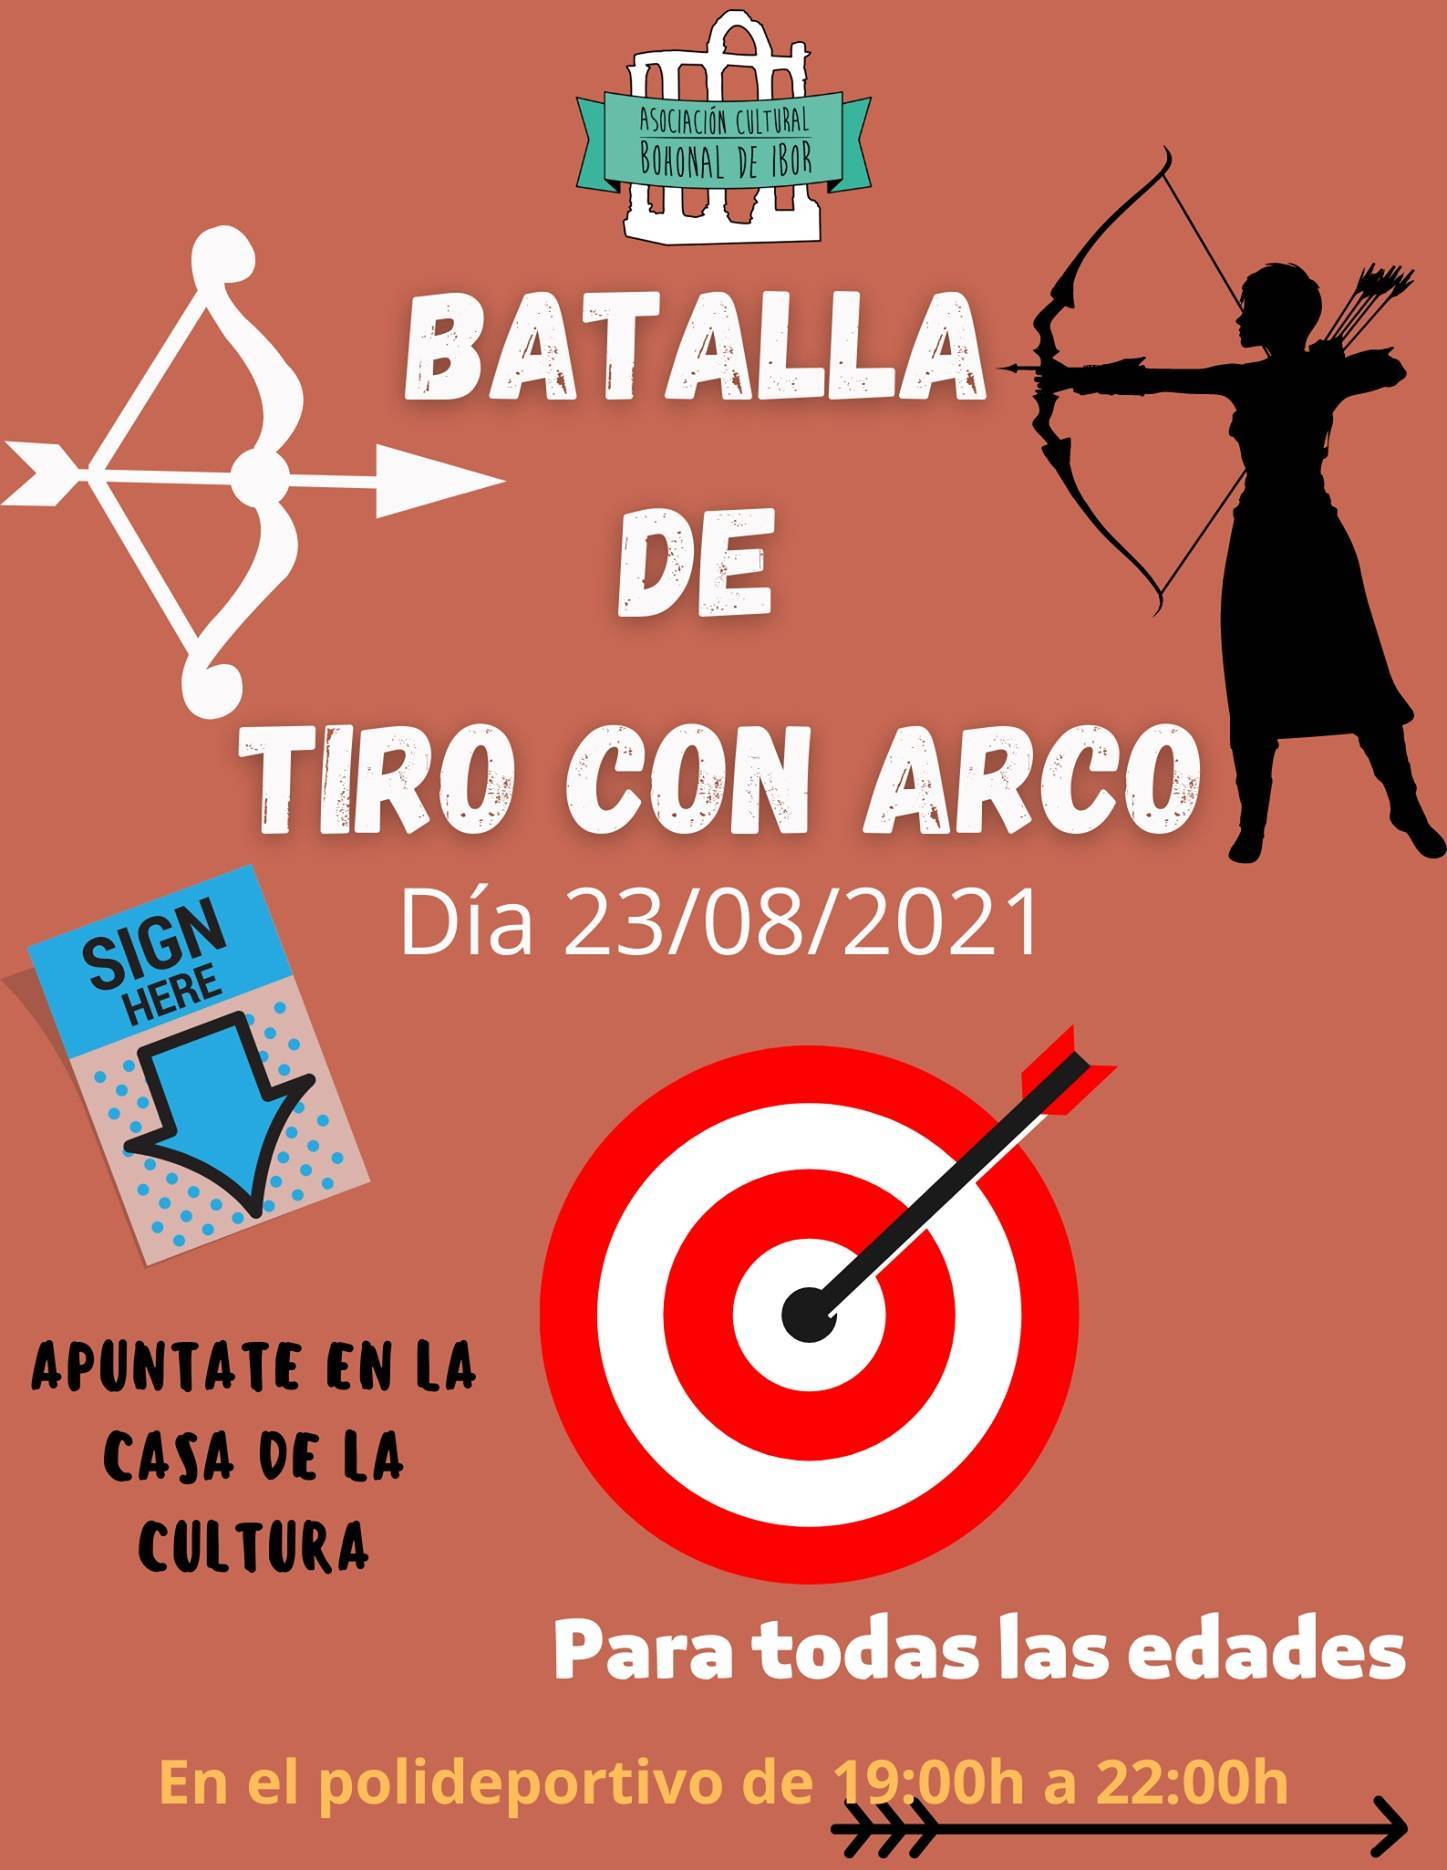 Batalla de tiro con arco (2021) - Bohonal de Ibor (Cáceres)